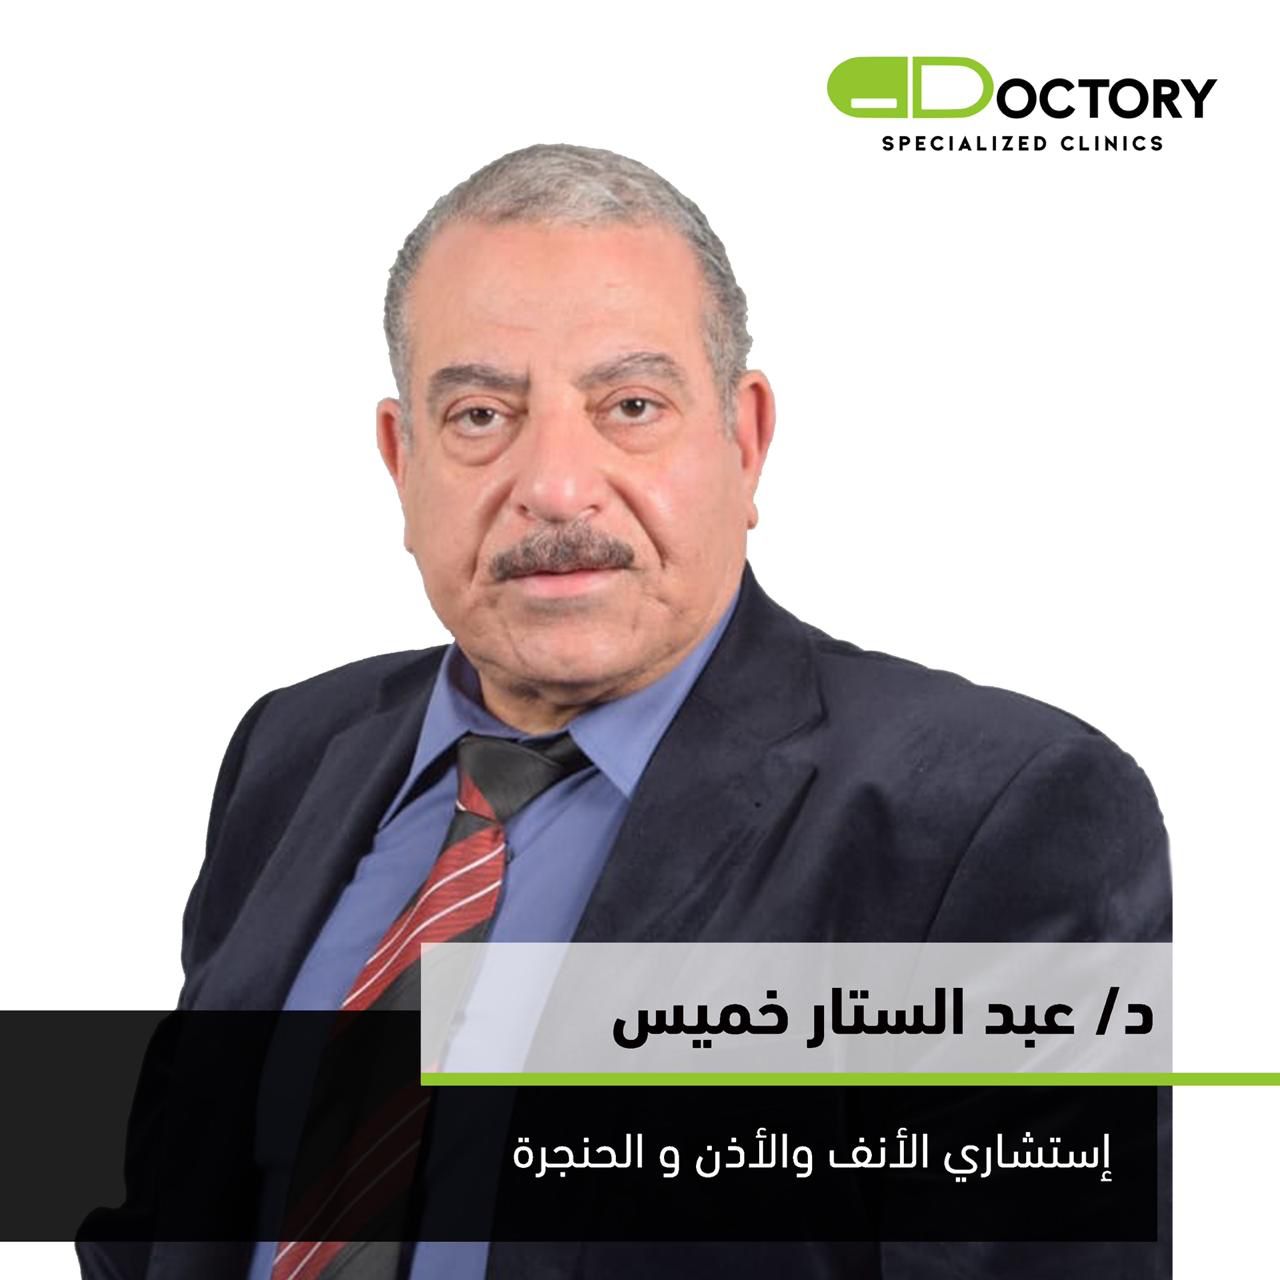 Dr. Abd El Sattar Hassan Khamees